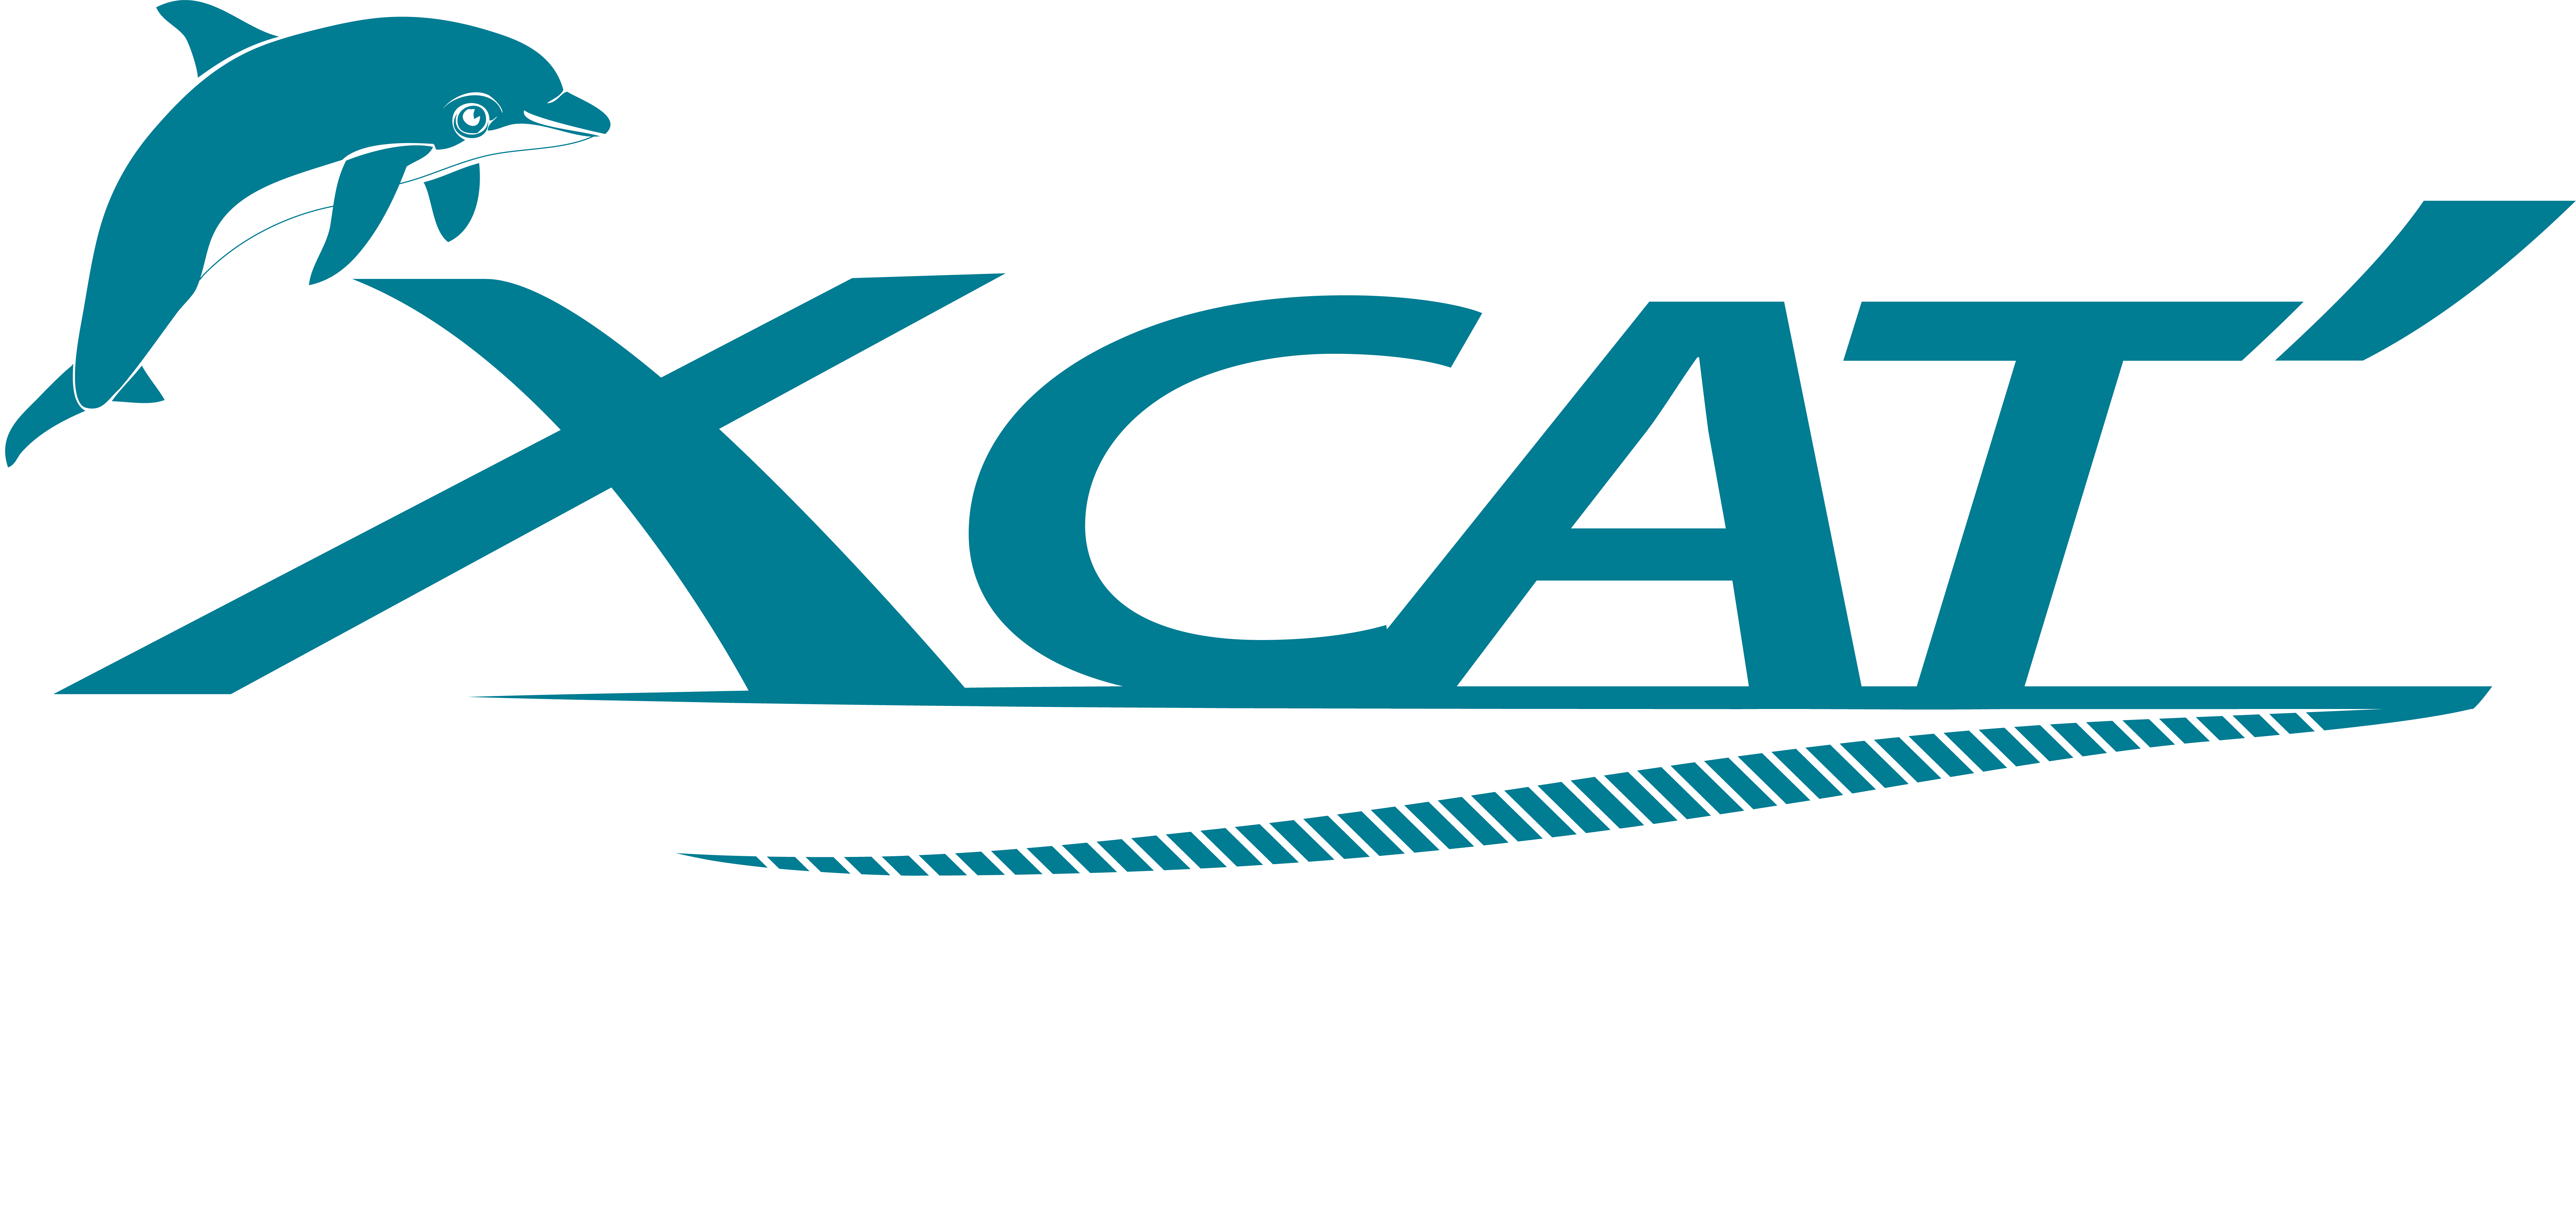 Xcat' Partenaire de vos expériences maritimes